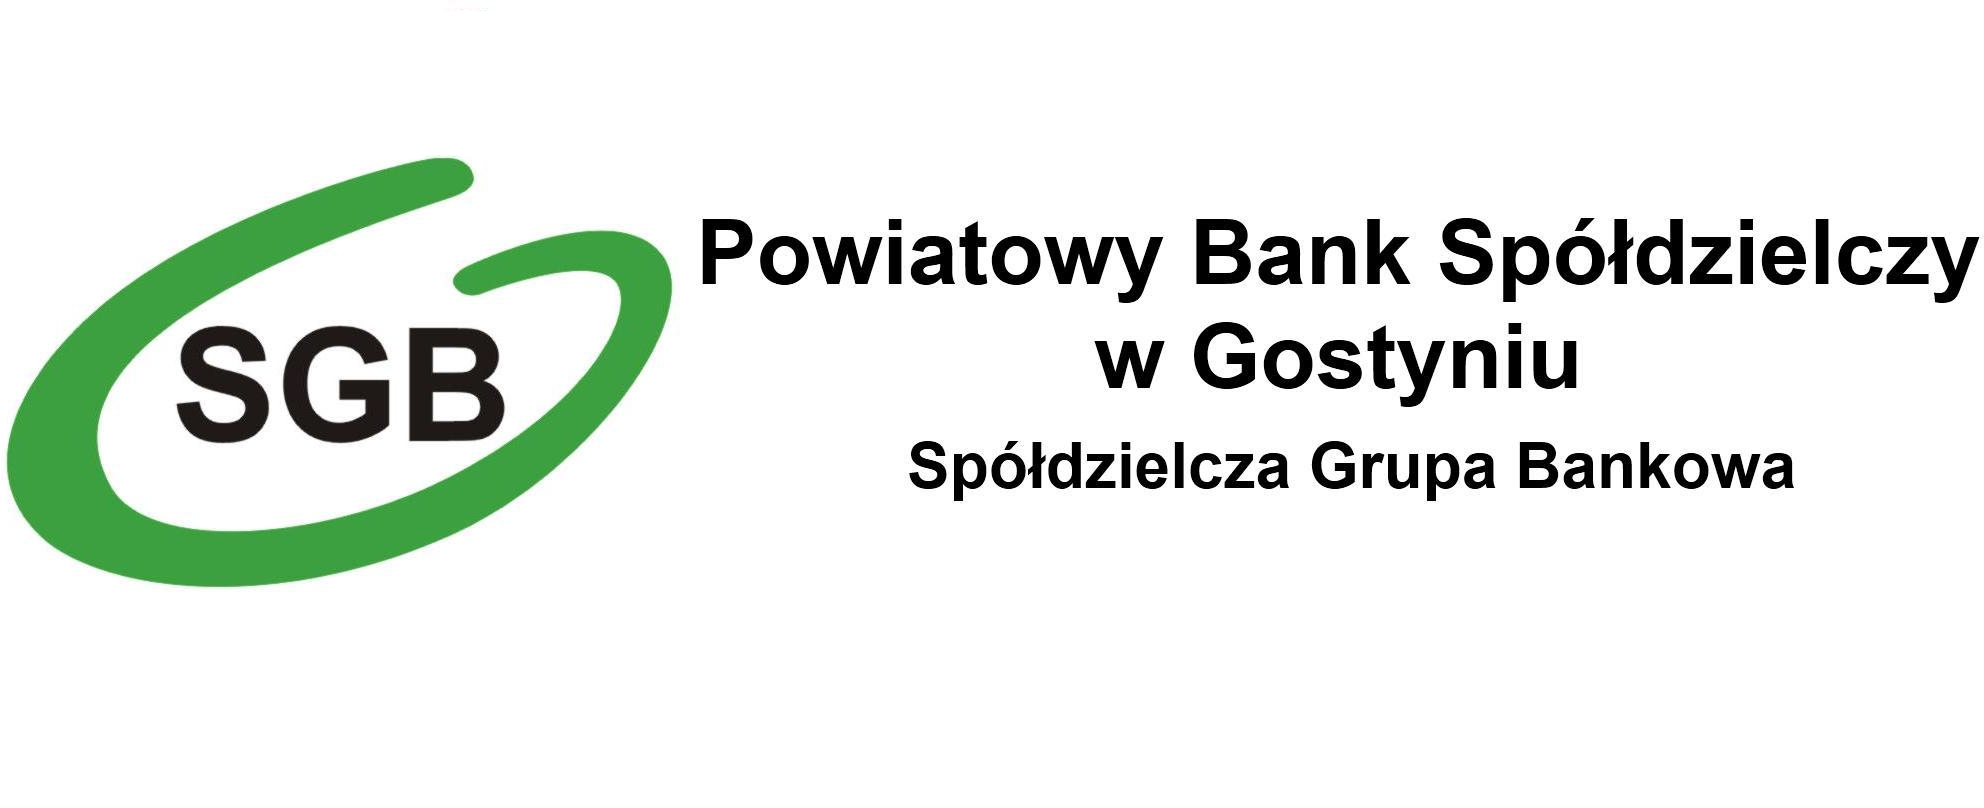 Aktualności - Powiatowy Bank Spółdzielczy w Gostyniu